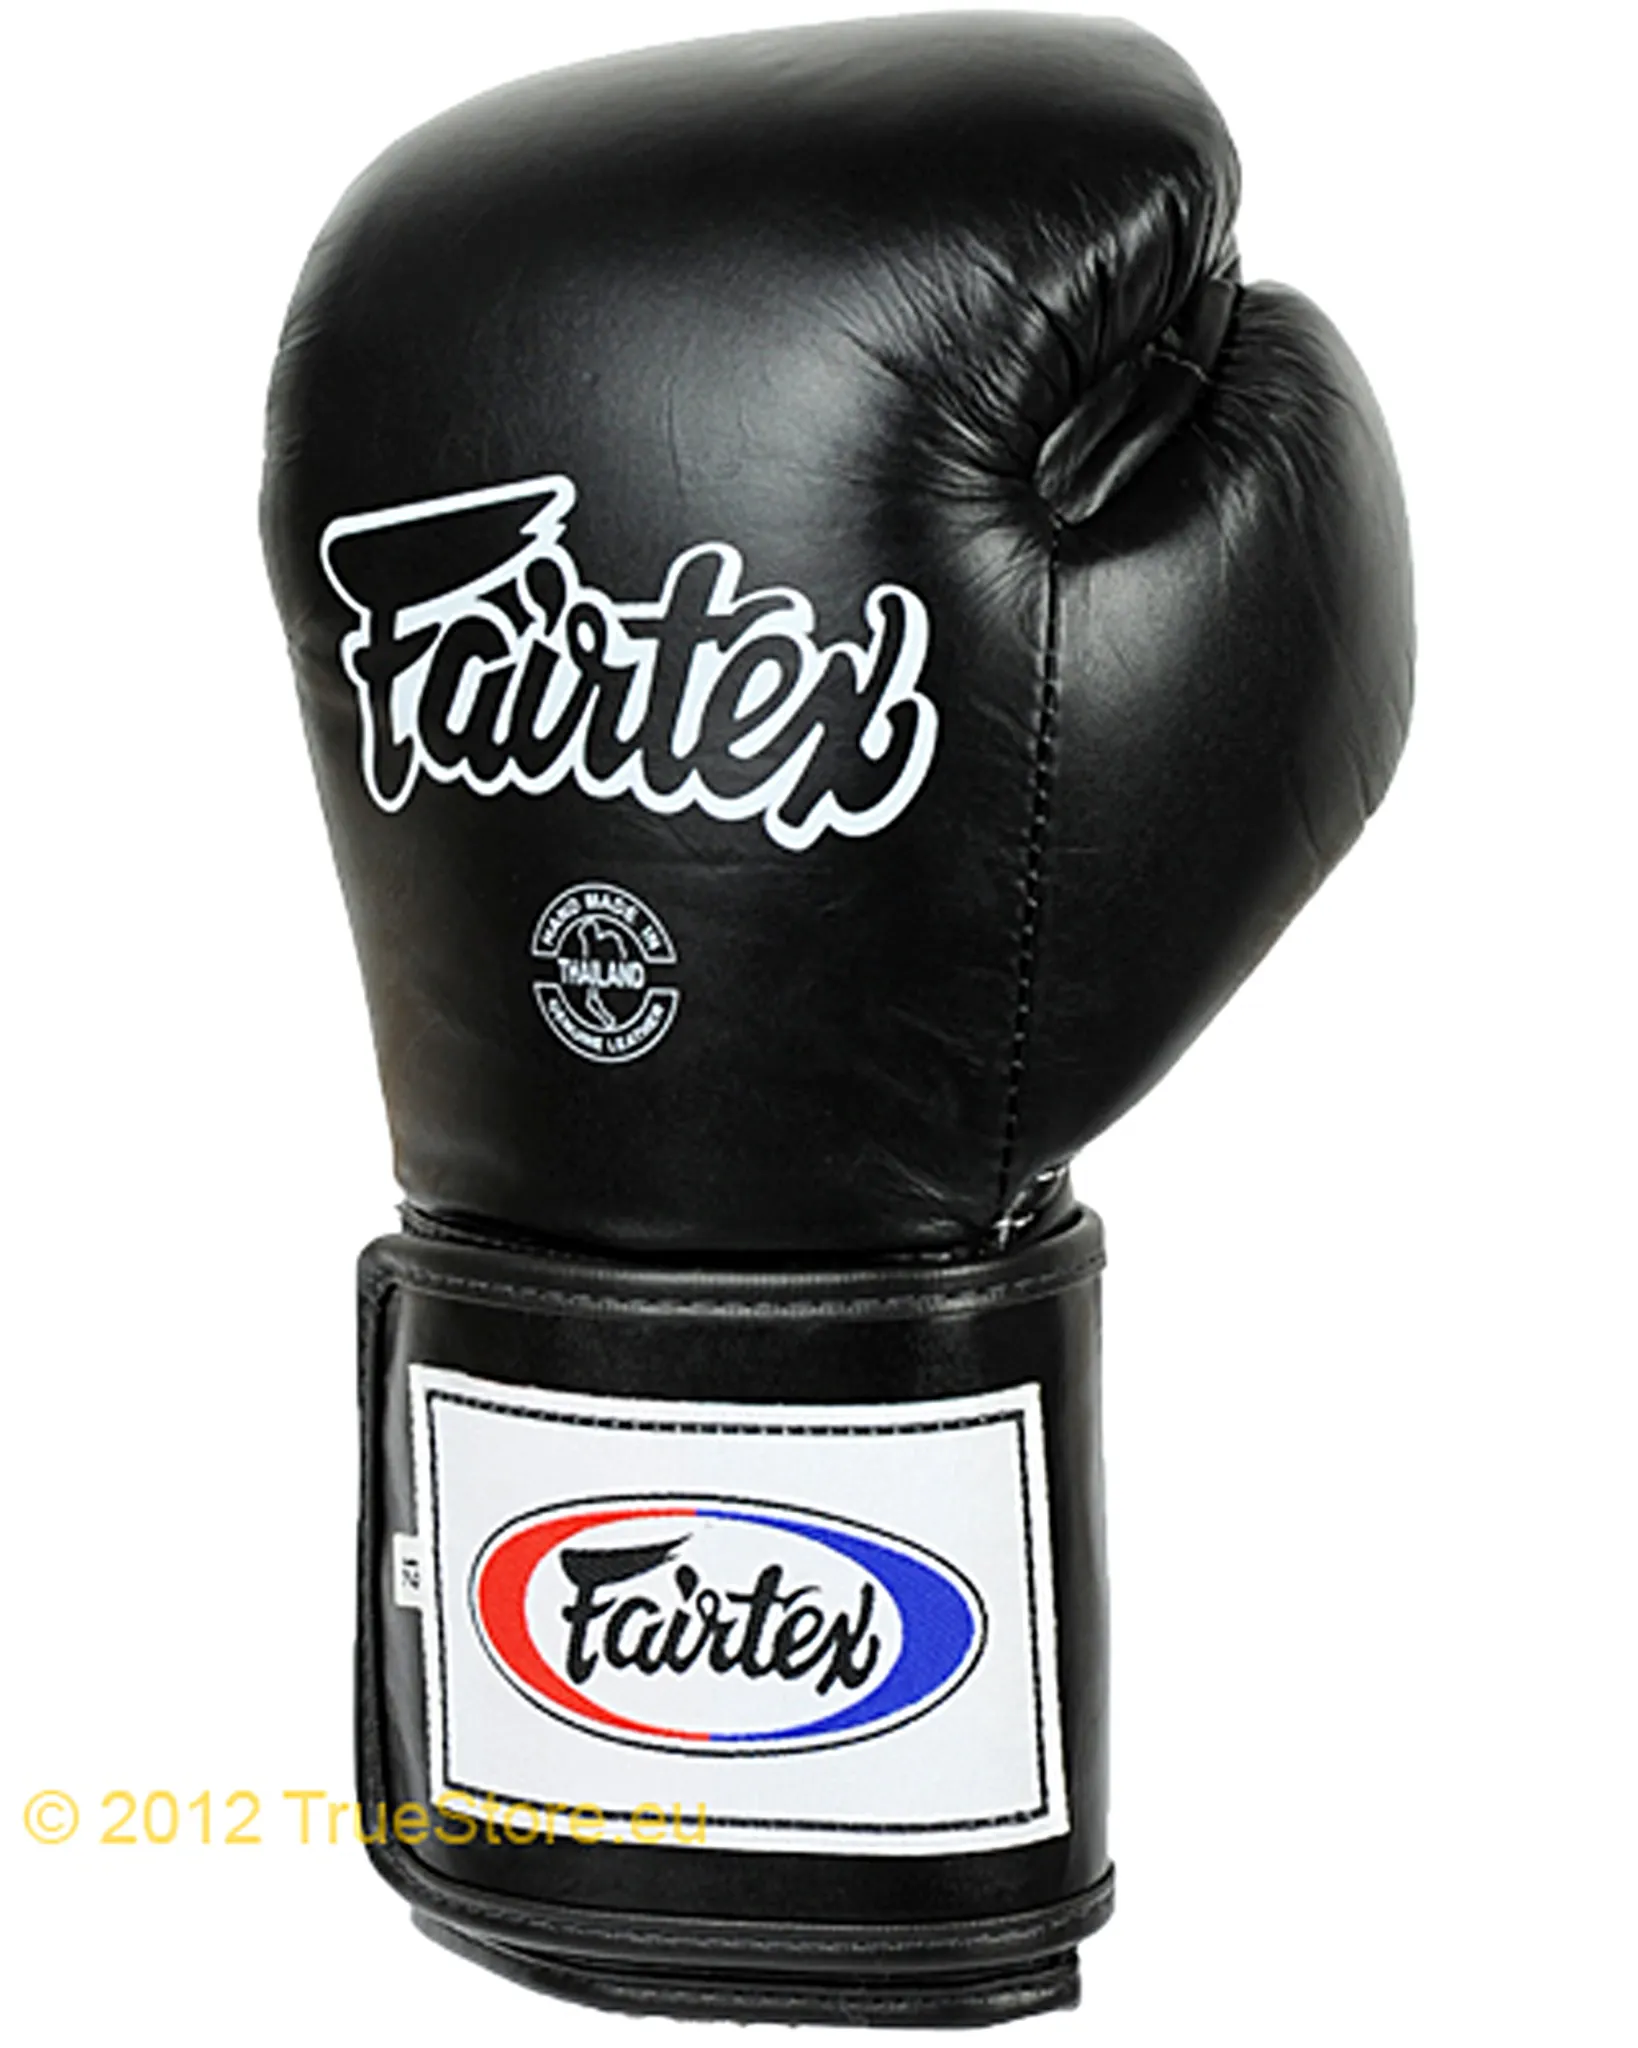 Super Fairtex Leder Boxhandschuhe Sparring